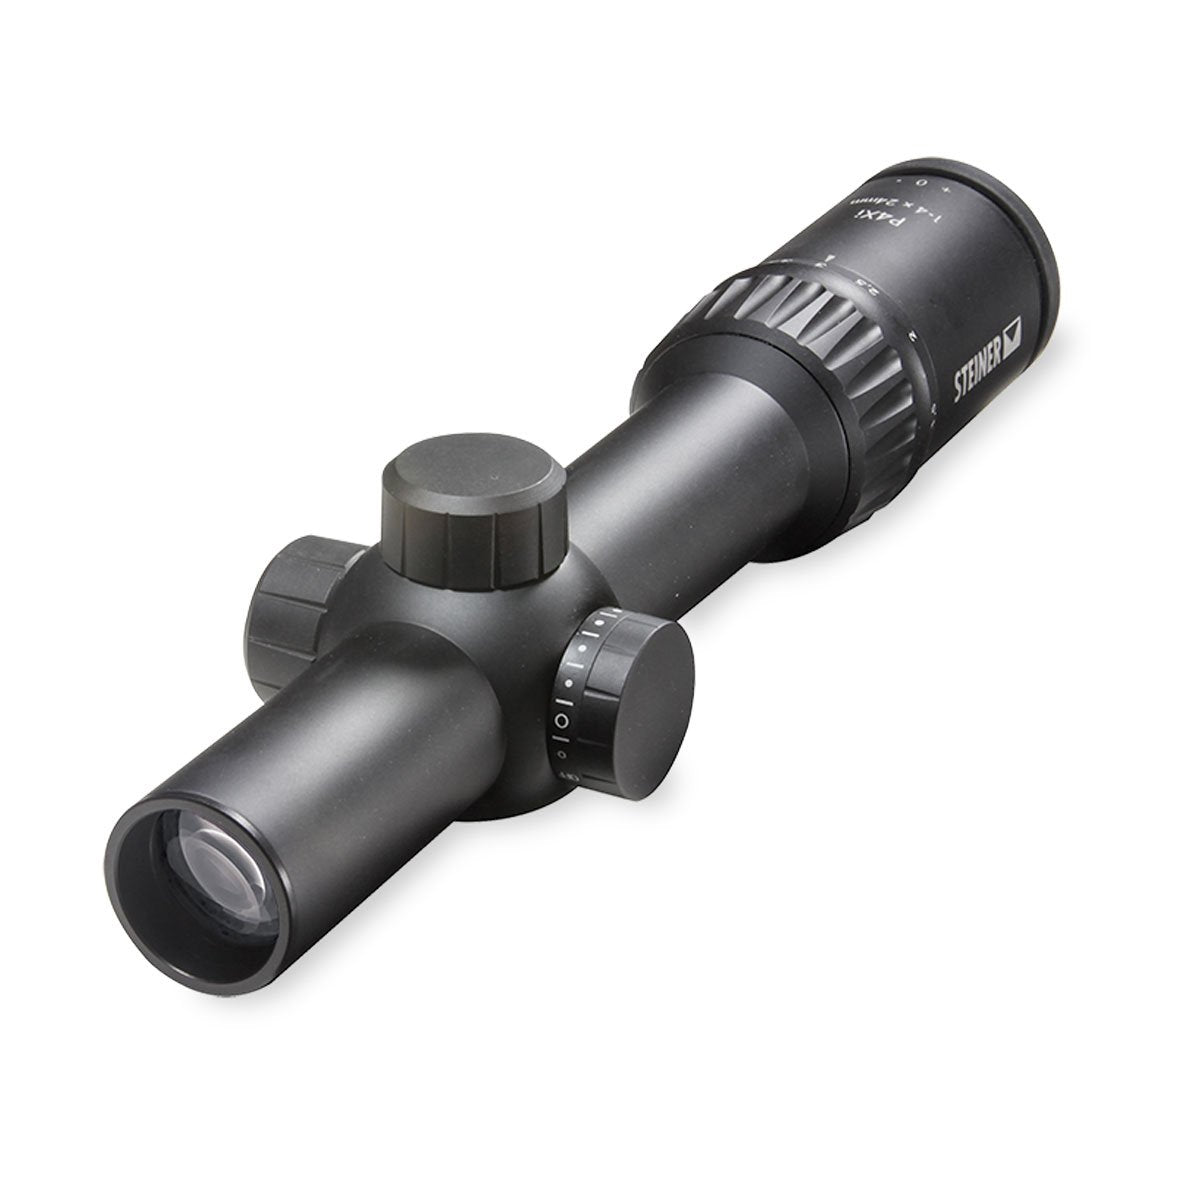 Steiner P4Xi Riflescope Optics Steiner Binoculars Tactical Gear Supplier Tactical Distributors Australia